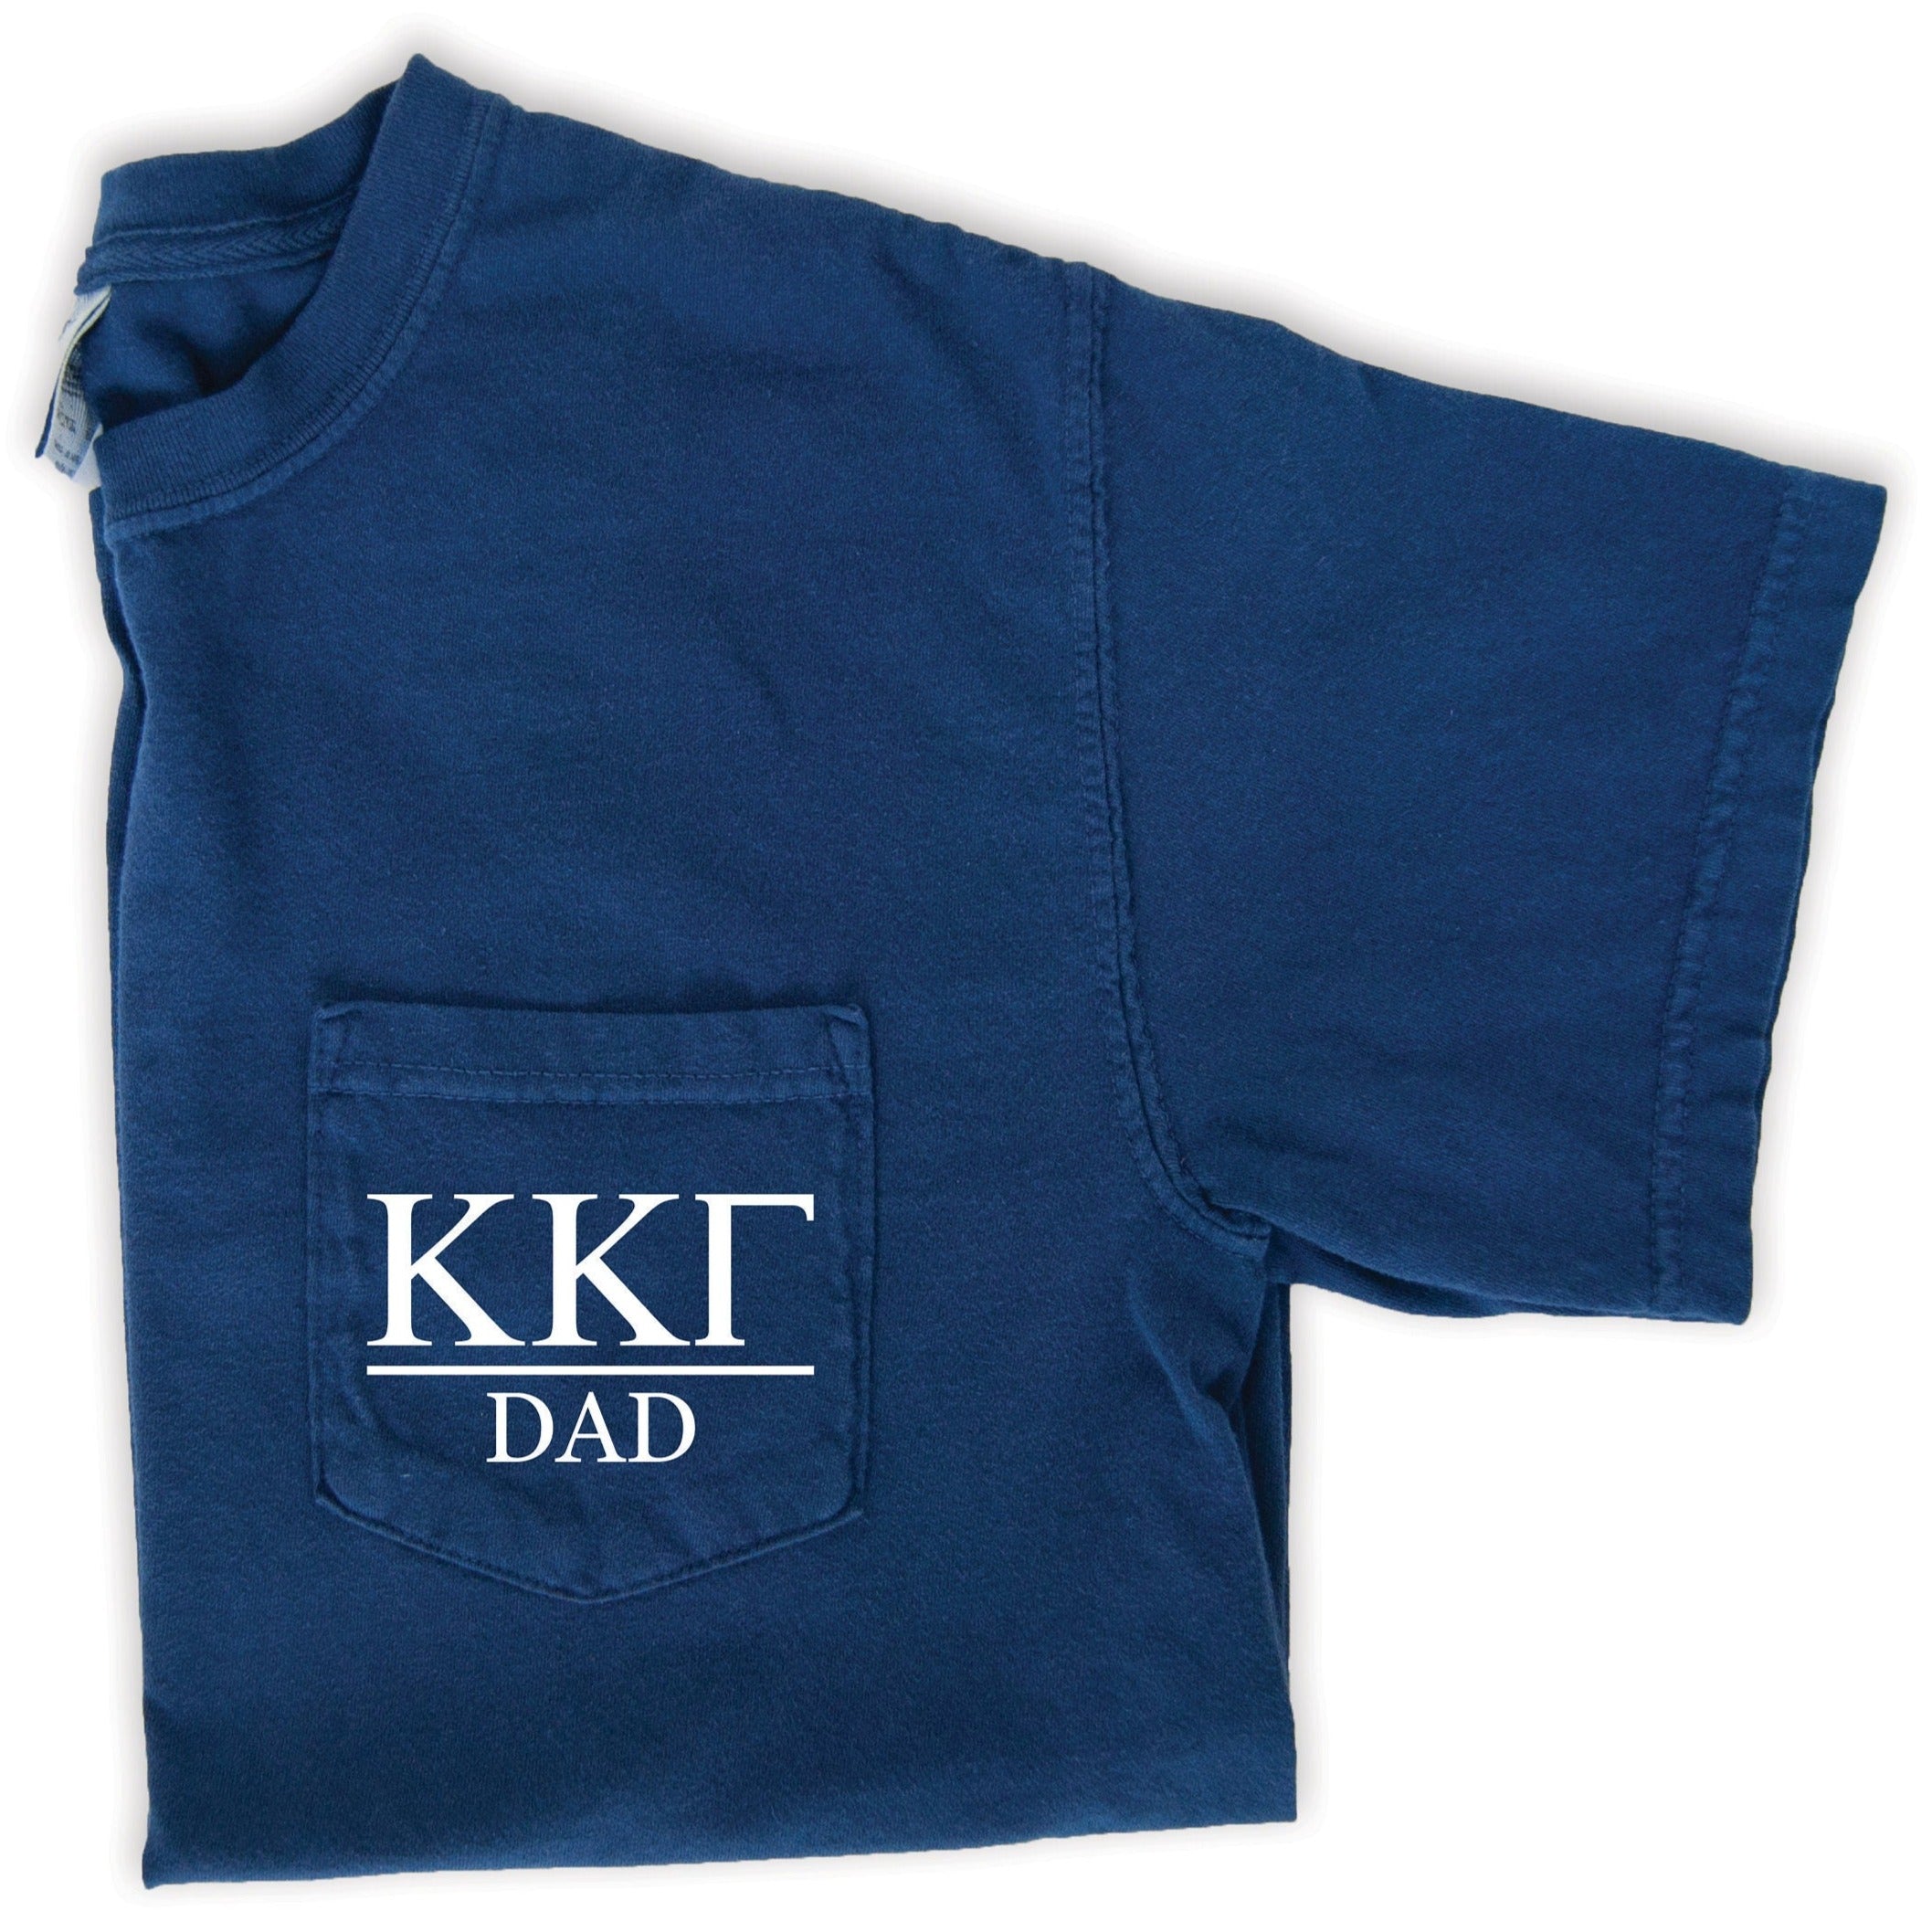 Kappa Kappa Gamma Dad T-Shirt - Navy - Go Greek Chic